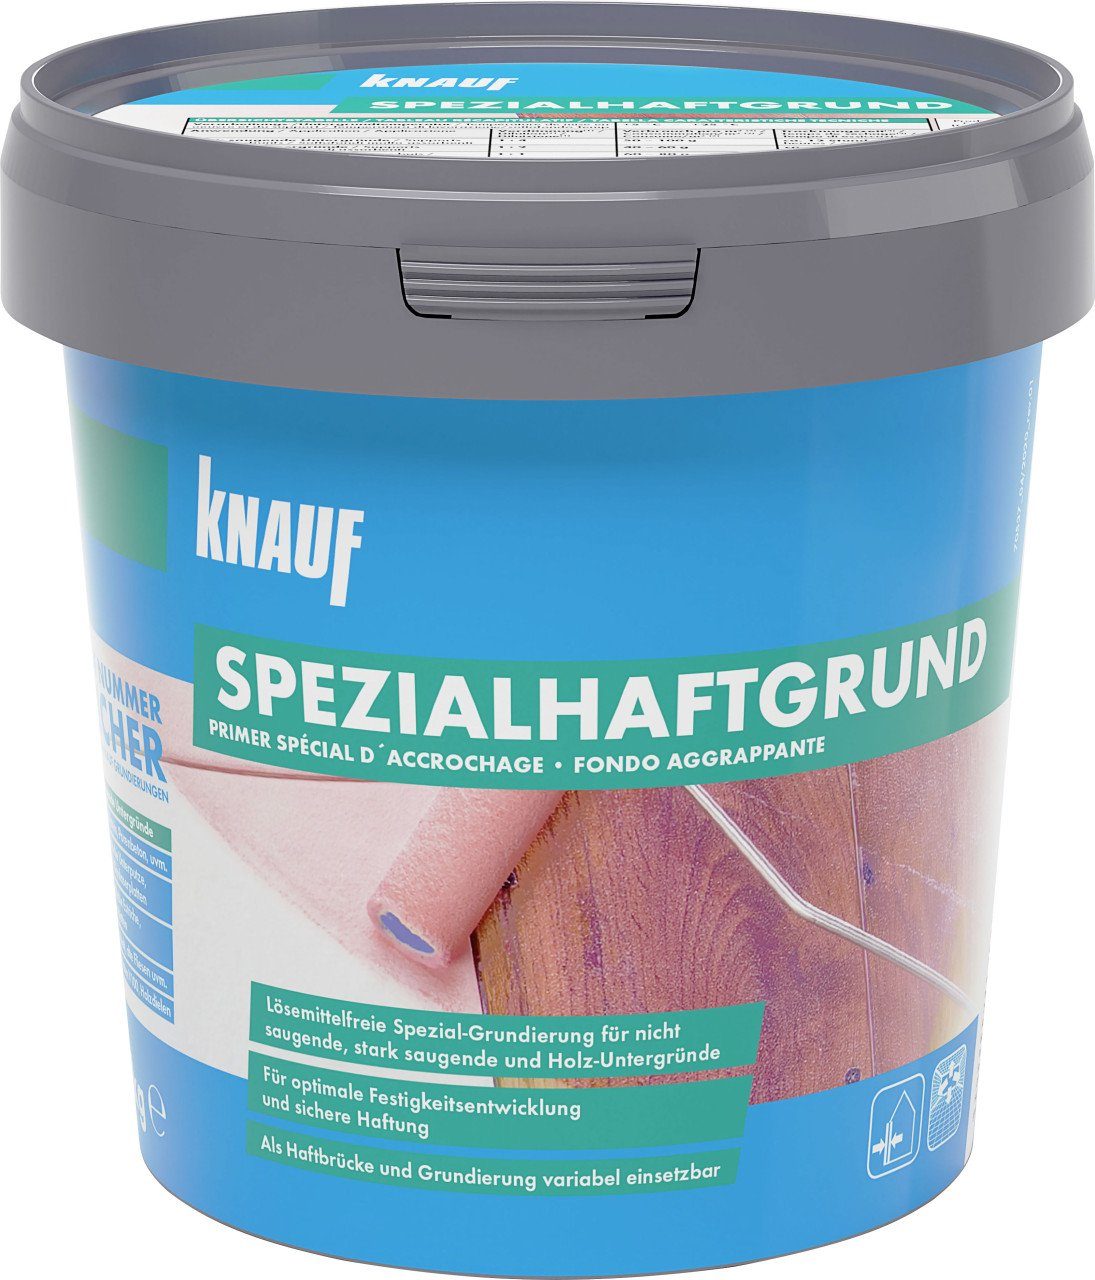 KNAUF Knauf Spezialhaftgrund 1 kg Naturstein-Imprägnierung